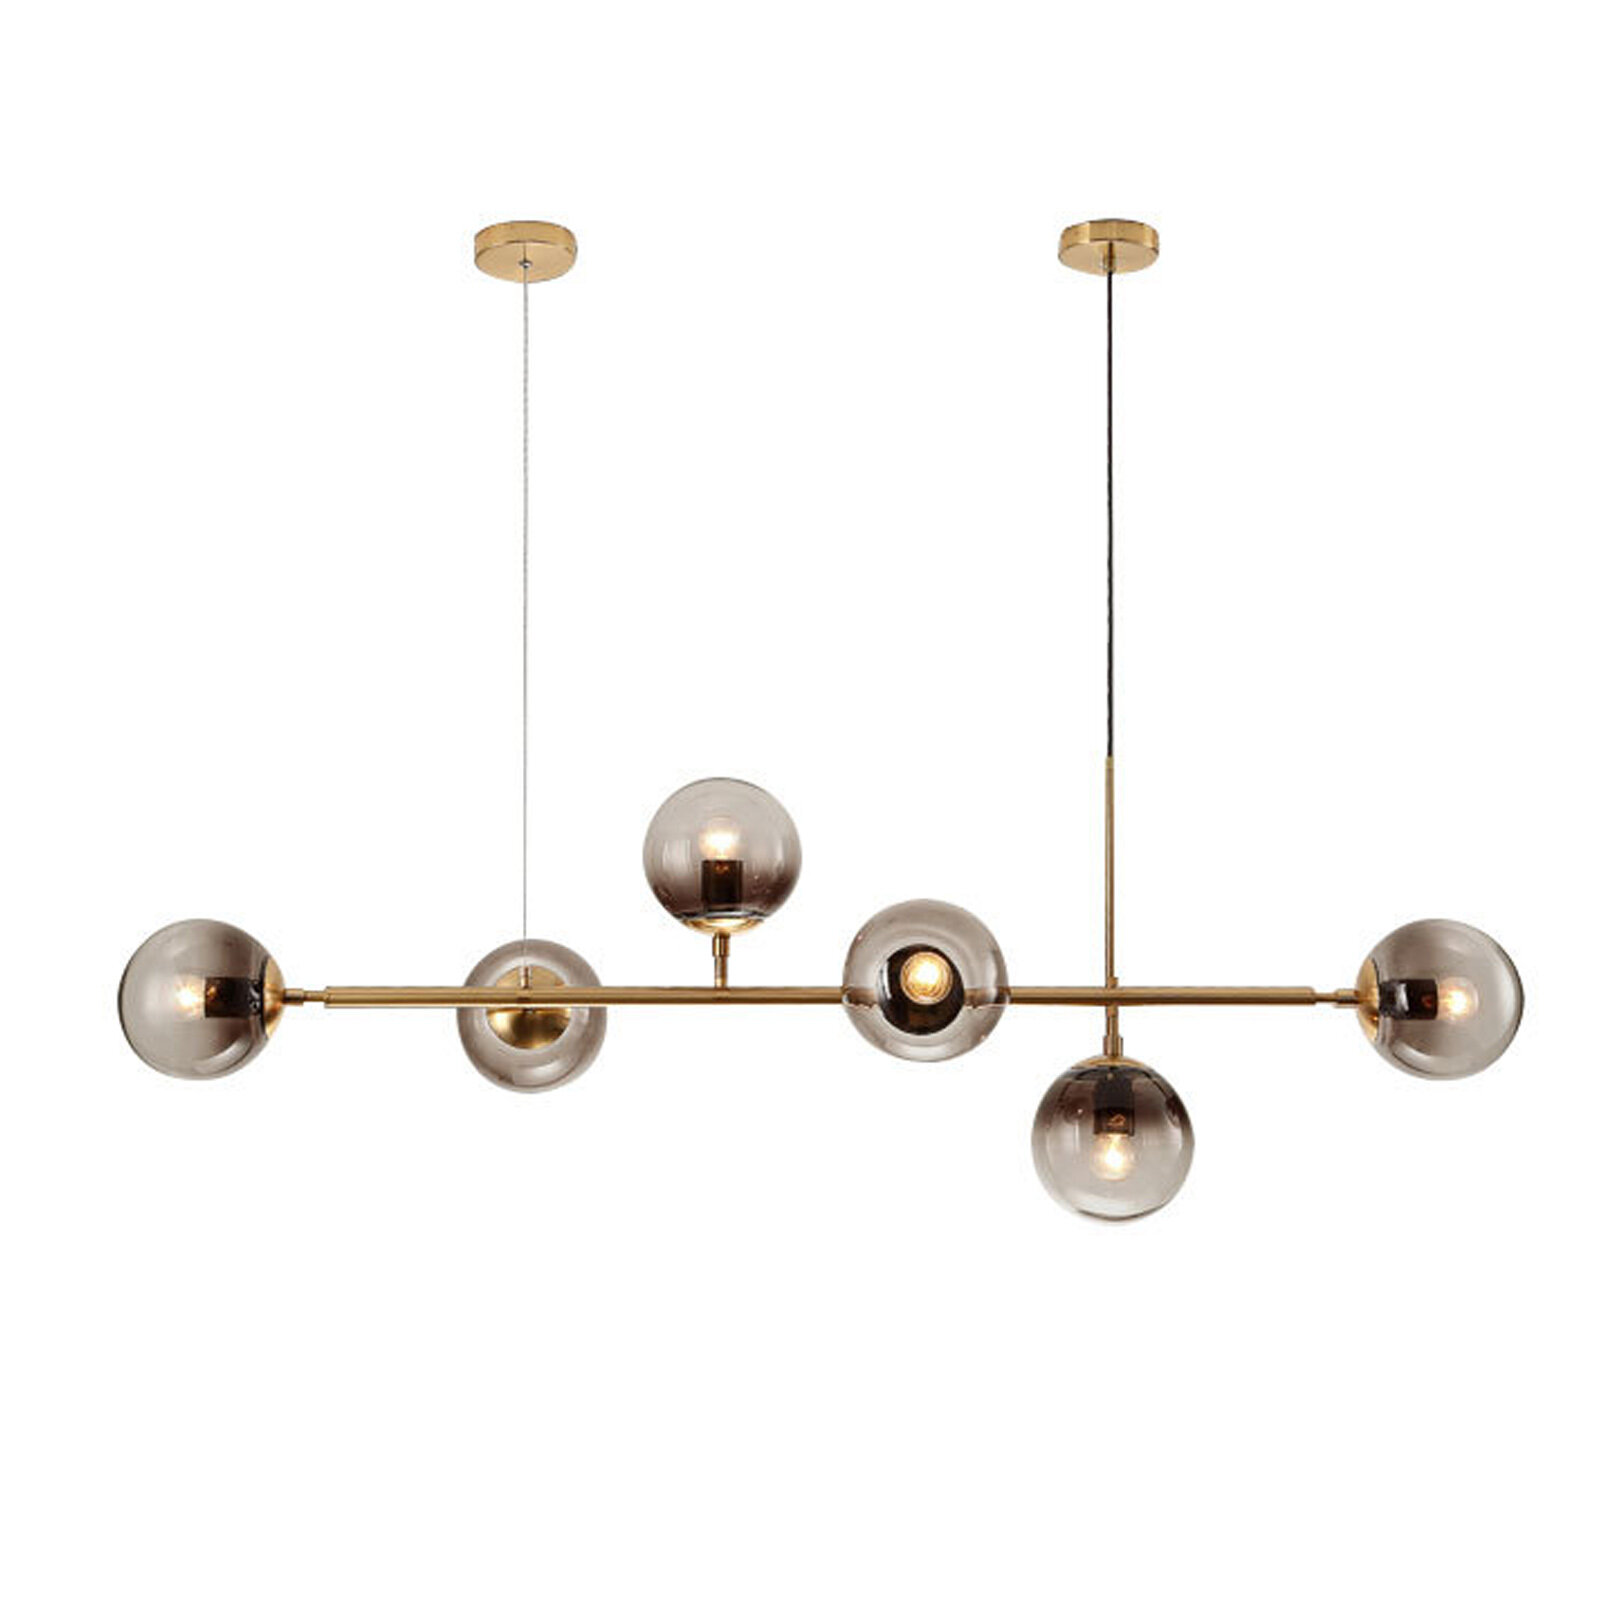 ZINUO 8-Light Modern Sputnik Chandelier Industrial Pendant Light Gold Pendant Lighting,for Kitchen Island Living Room Dining Room,Polishing Electroplating,Brass